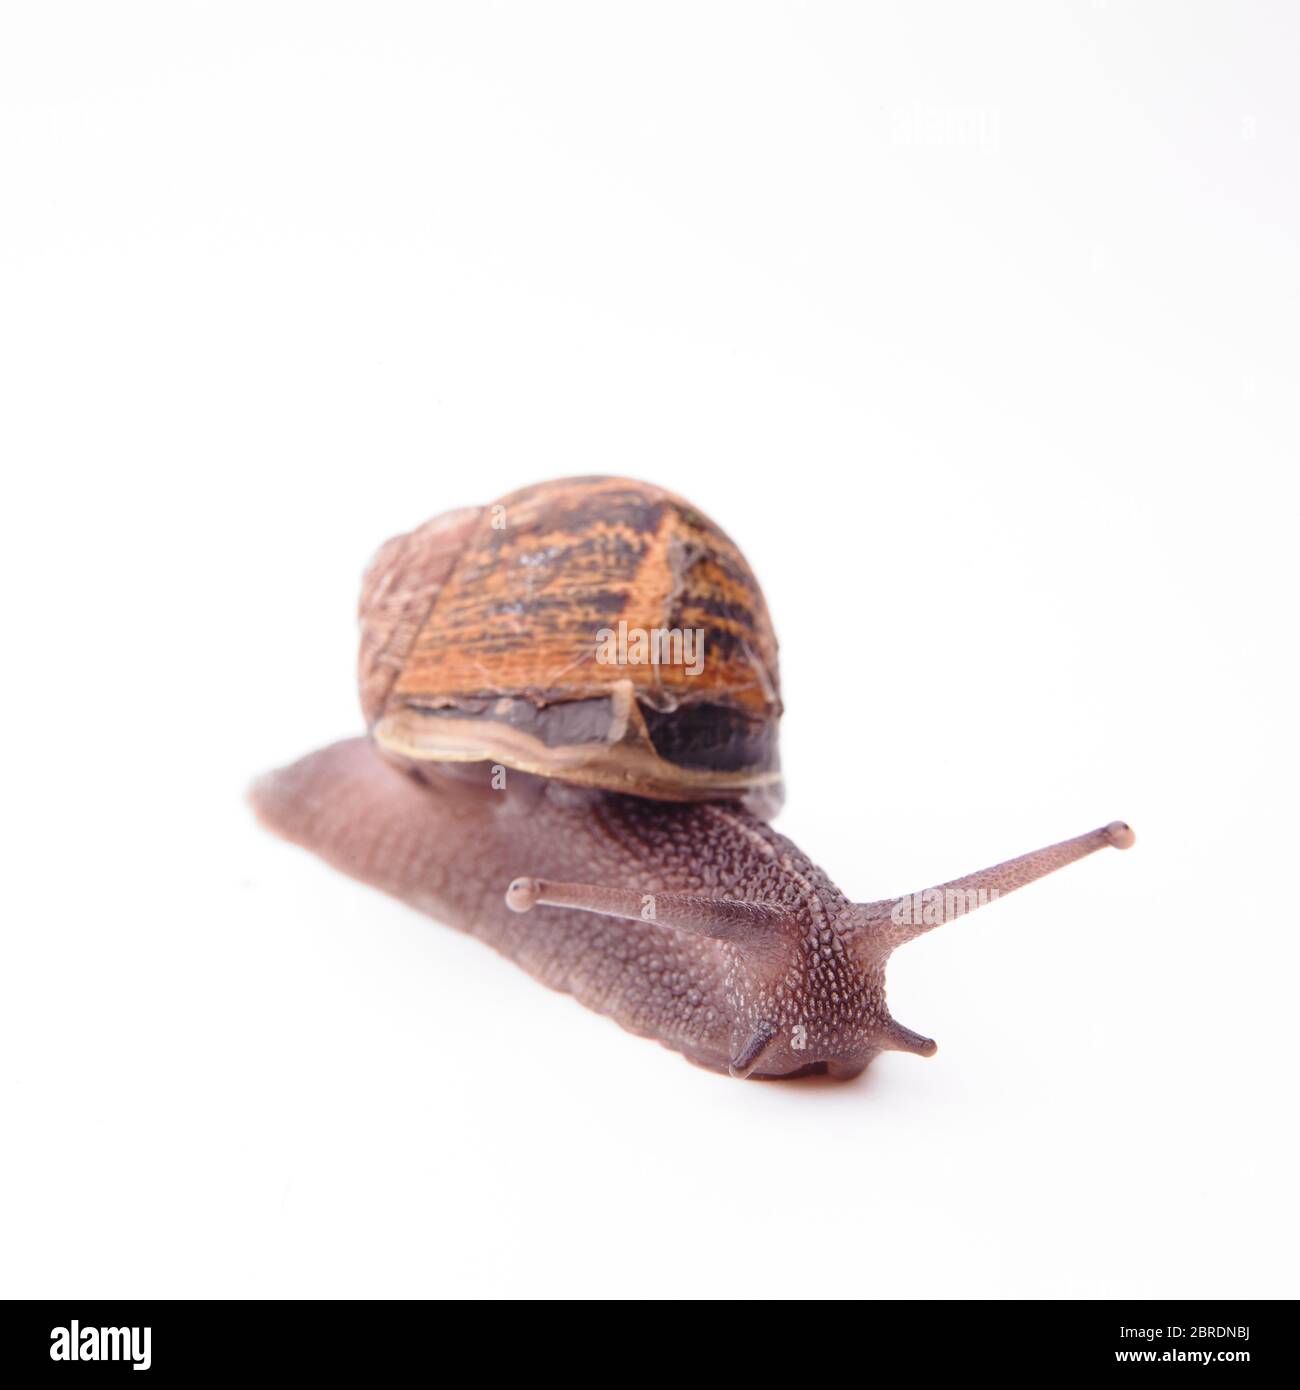 Garden Snail, Helix aspera, on white background Stock Photo